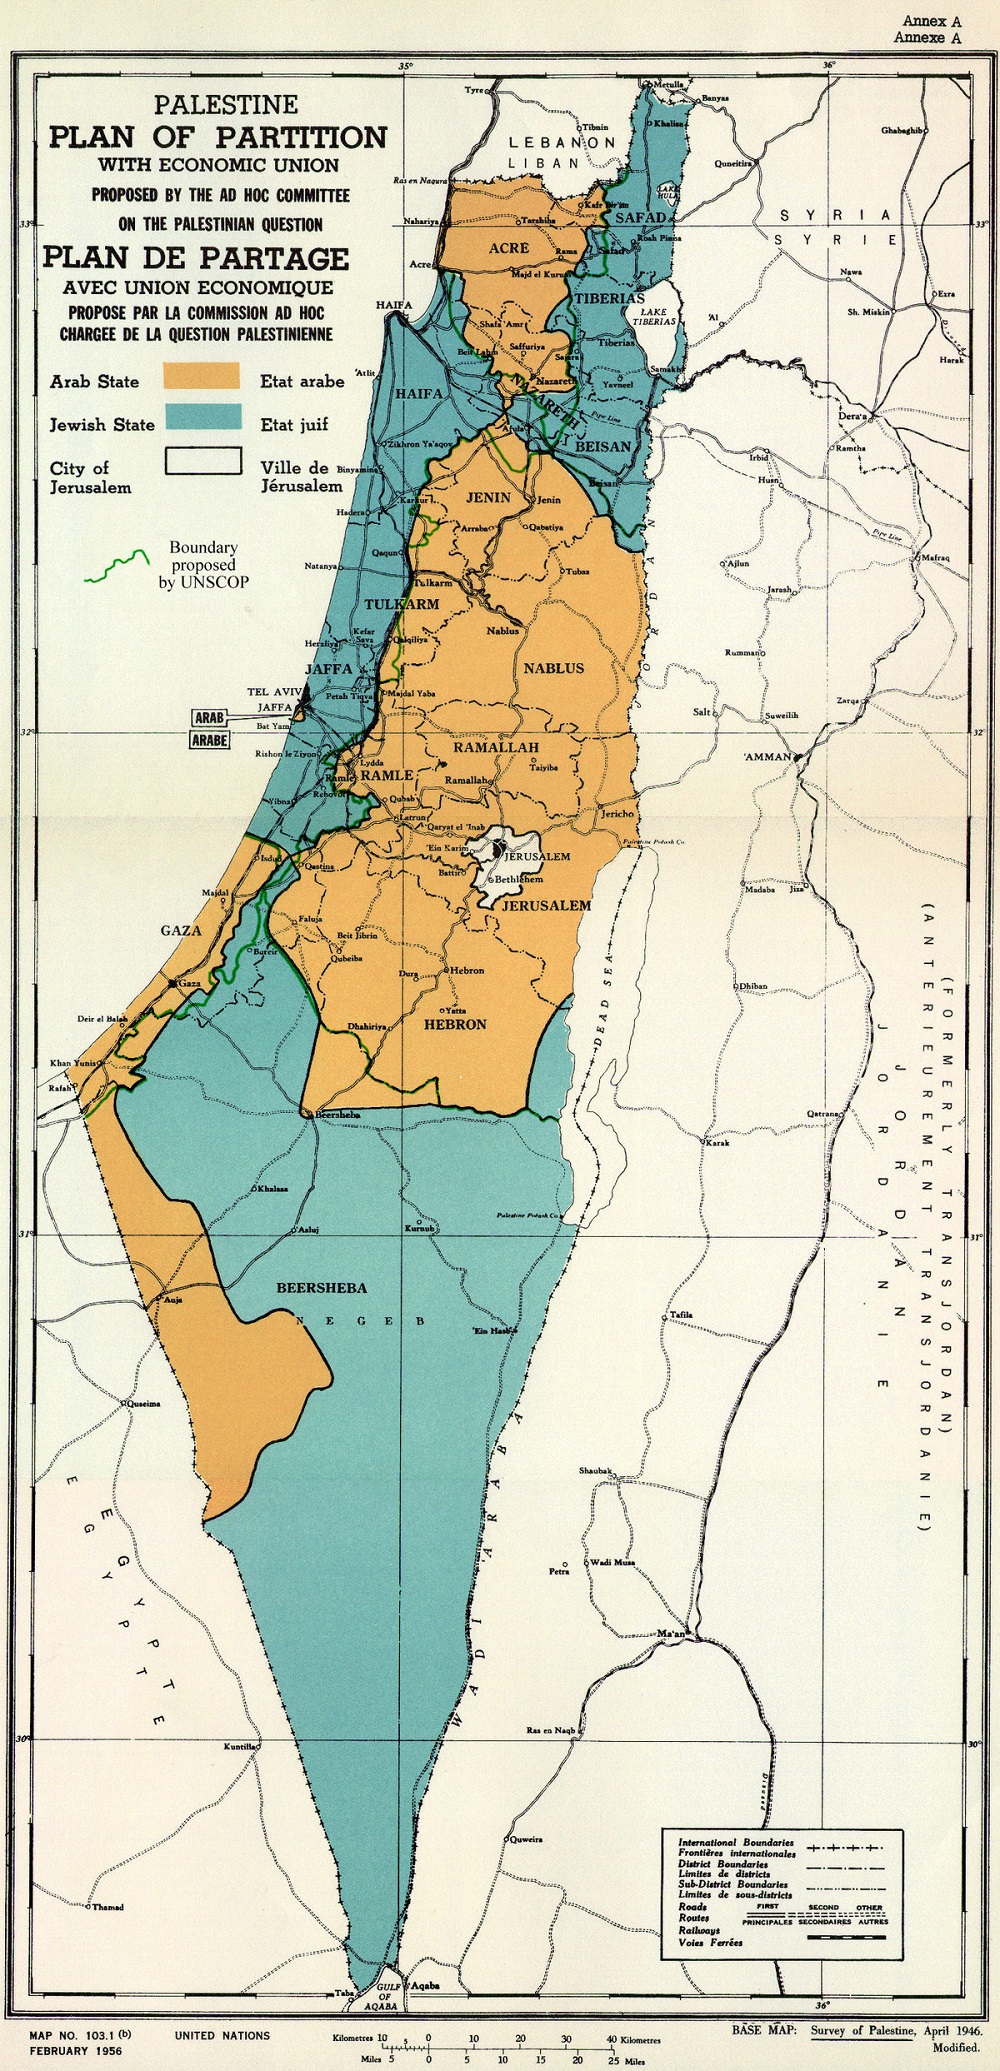 قسّمت الأمم المتحدة فلسطين إلى 3 مناطق واحدة لدولة فلسطينية وثانية ليهودية وثالثة تحت وصاية دولية (ويكيميديا).jpg